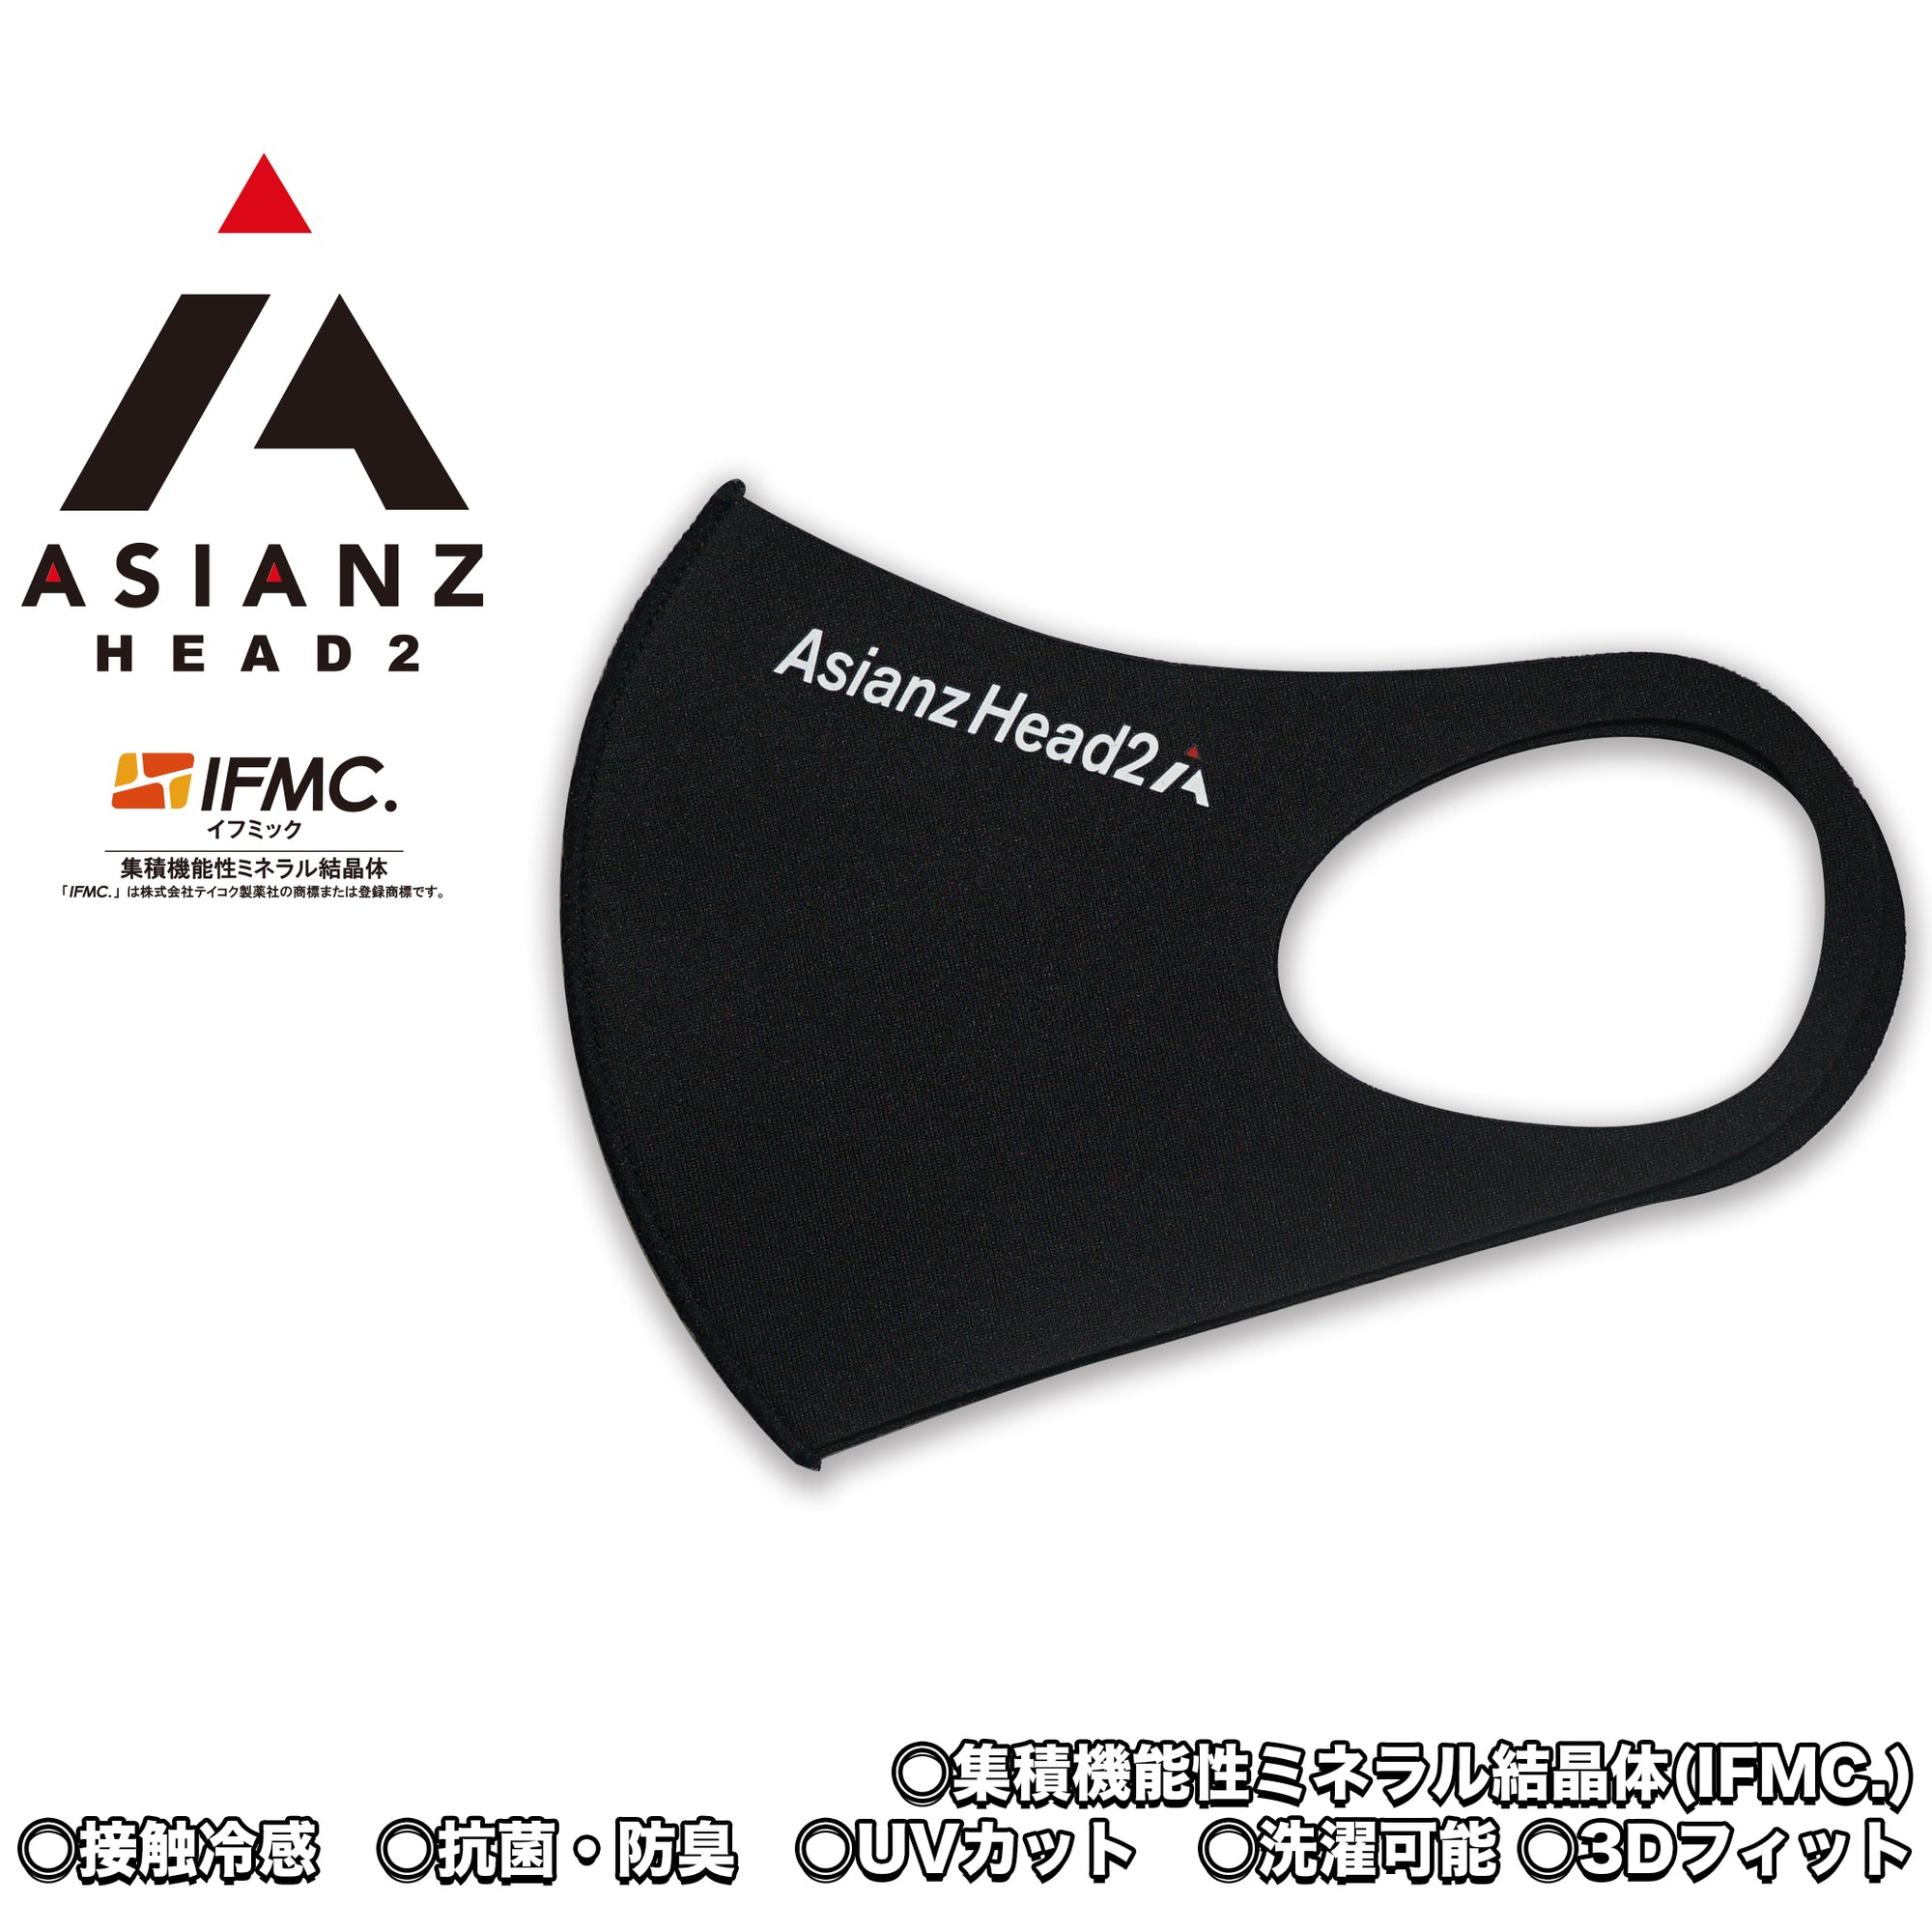 ミネラル マスク ASIANZ HEAD2 ロゴ ブラック (200651)